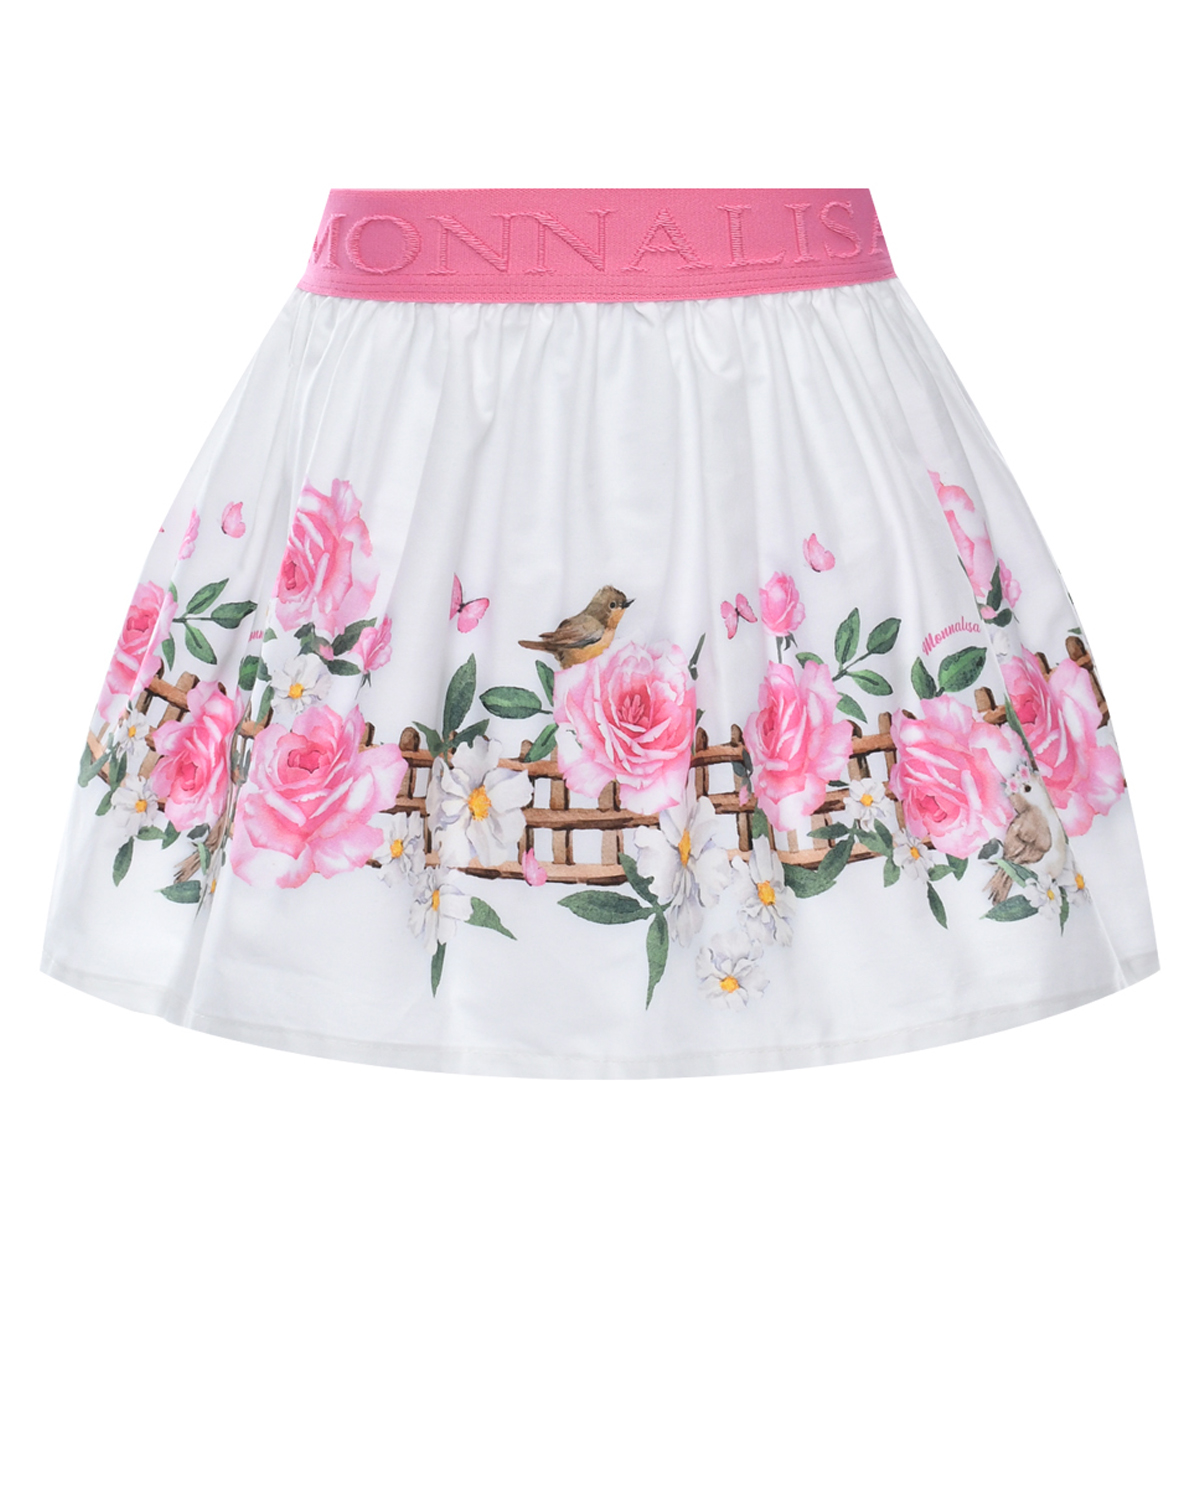 Юбка со сплошным цветочным принтом Monnalisa розовая юбка с очным принтом monnalisa